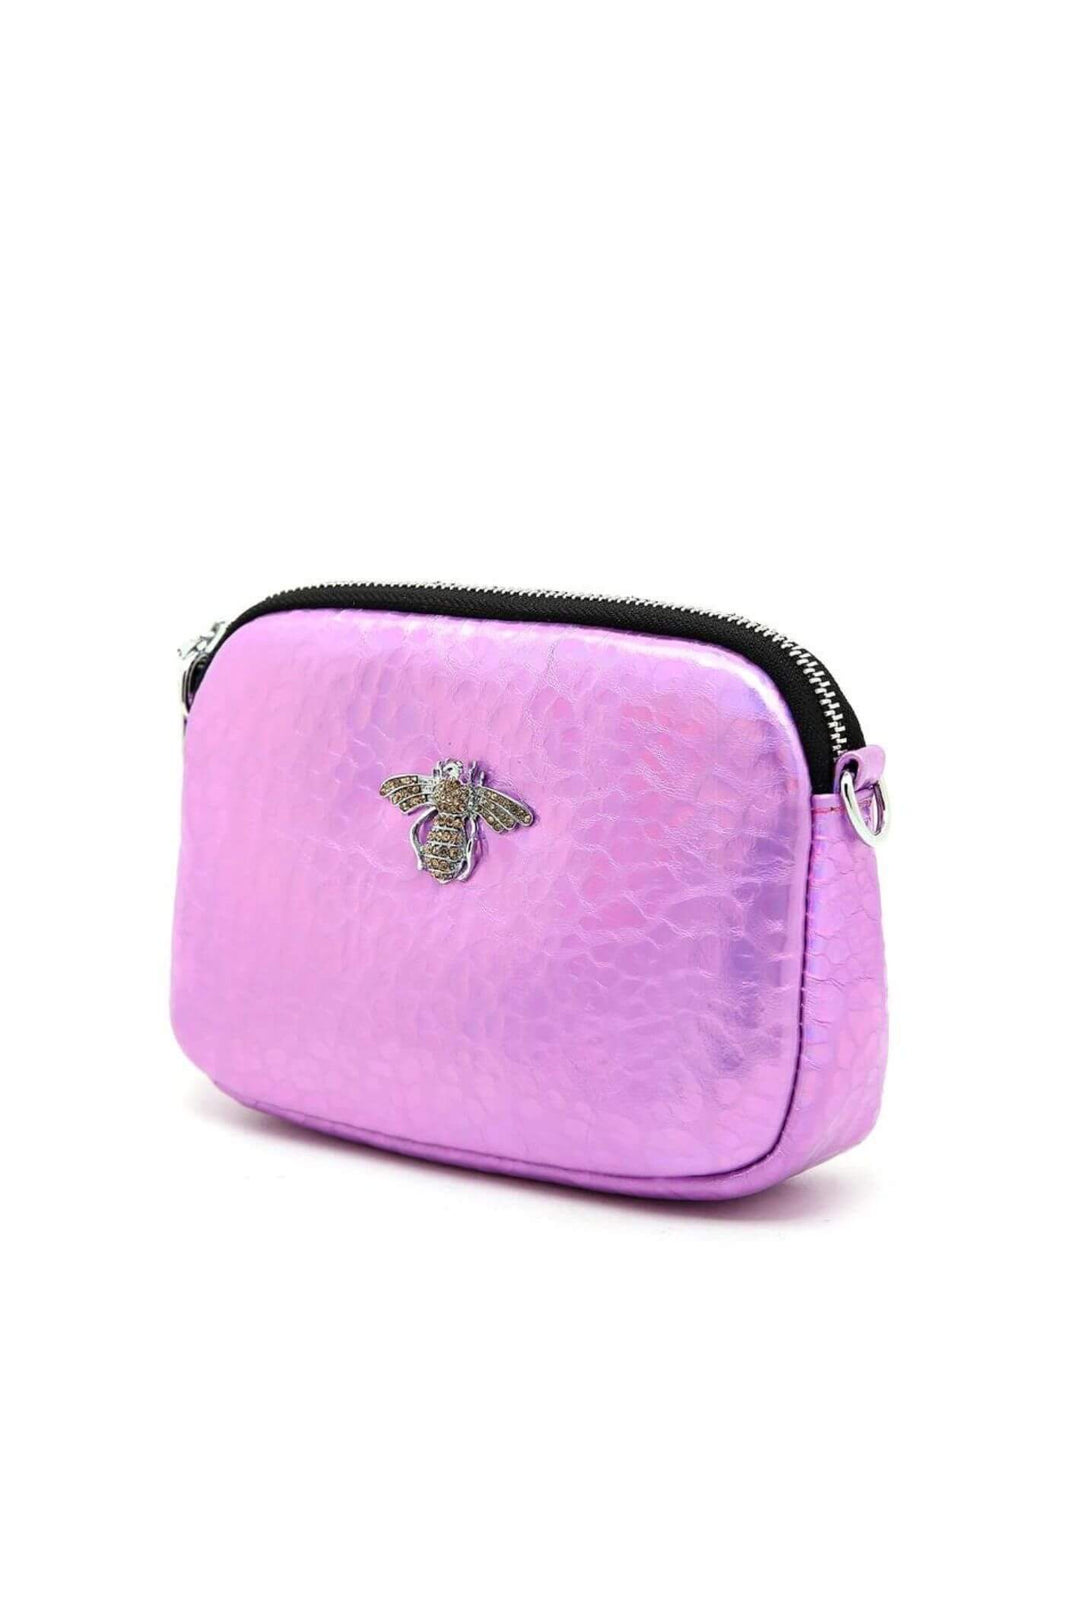 Metallic Pink Leather Bee Crystal Bag